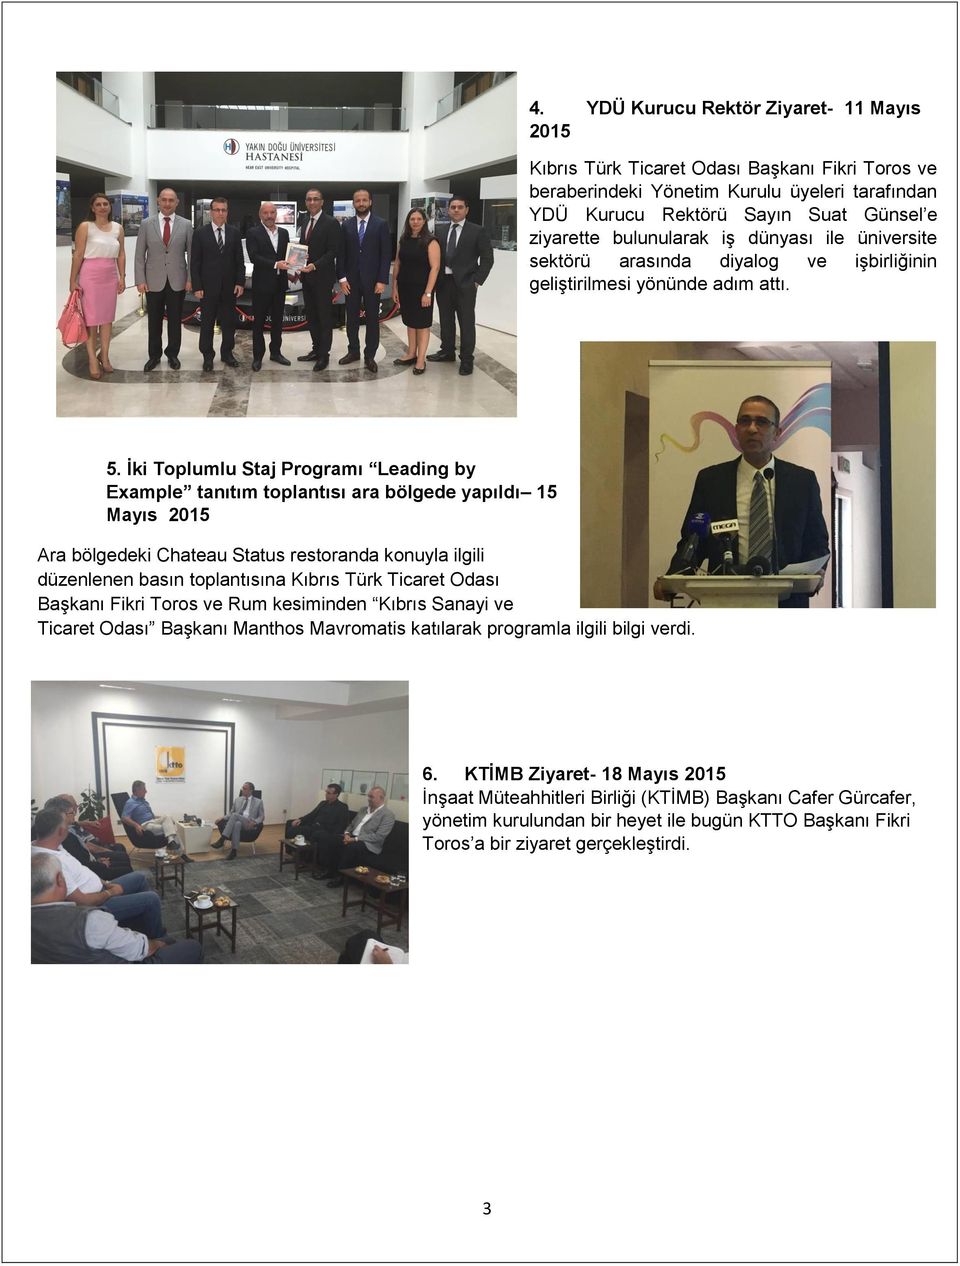 İki Toplumlu Staj Programı Leading by Example tanıtım toplantısı ara bölgede yapıldı 15 Mayıs 2015 Ara bölgedeki Chateau Status restoranda konuyla ilgili düzenlenen basın toplantısına Kıbrıs Türk